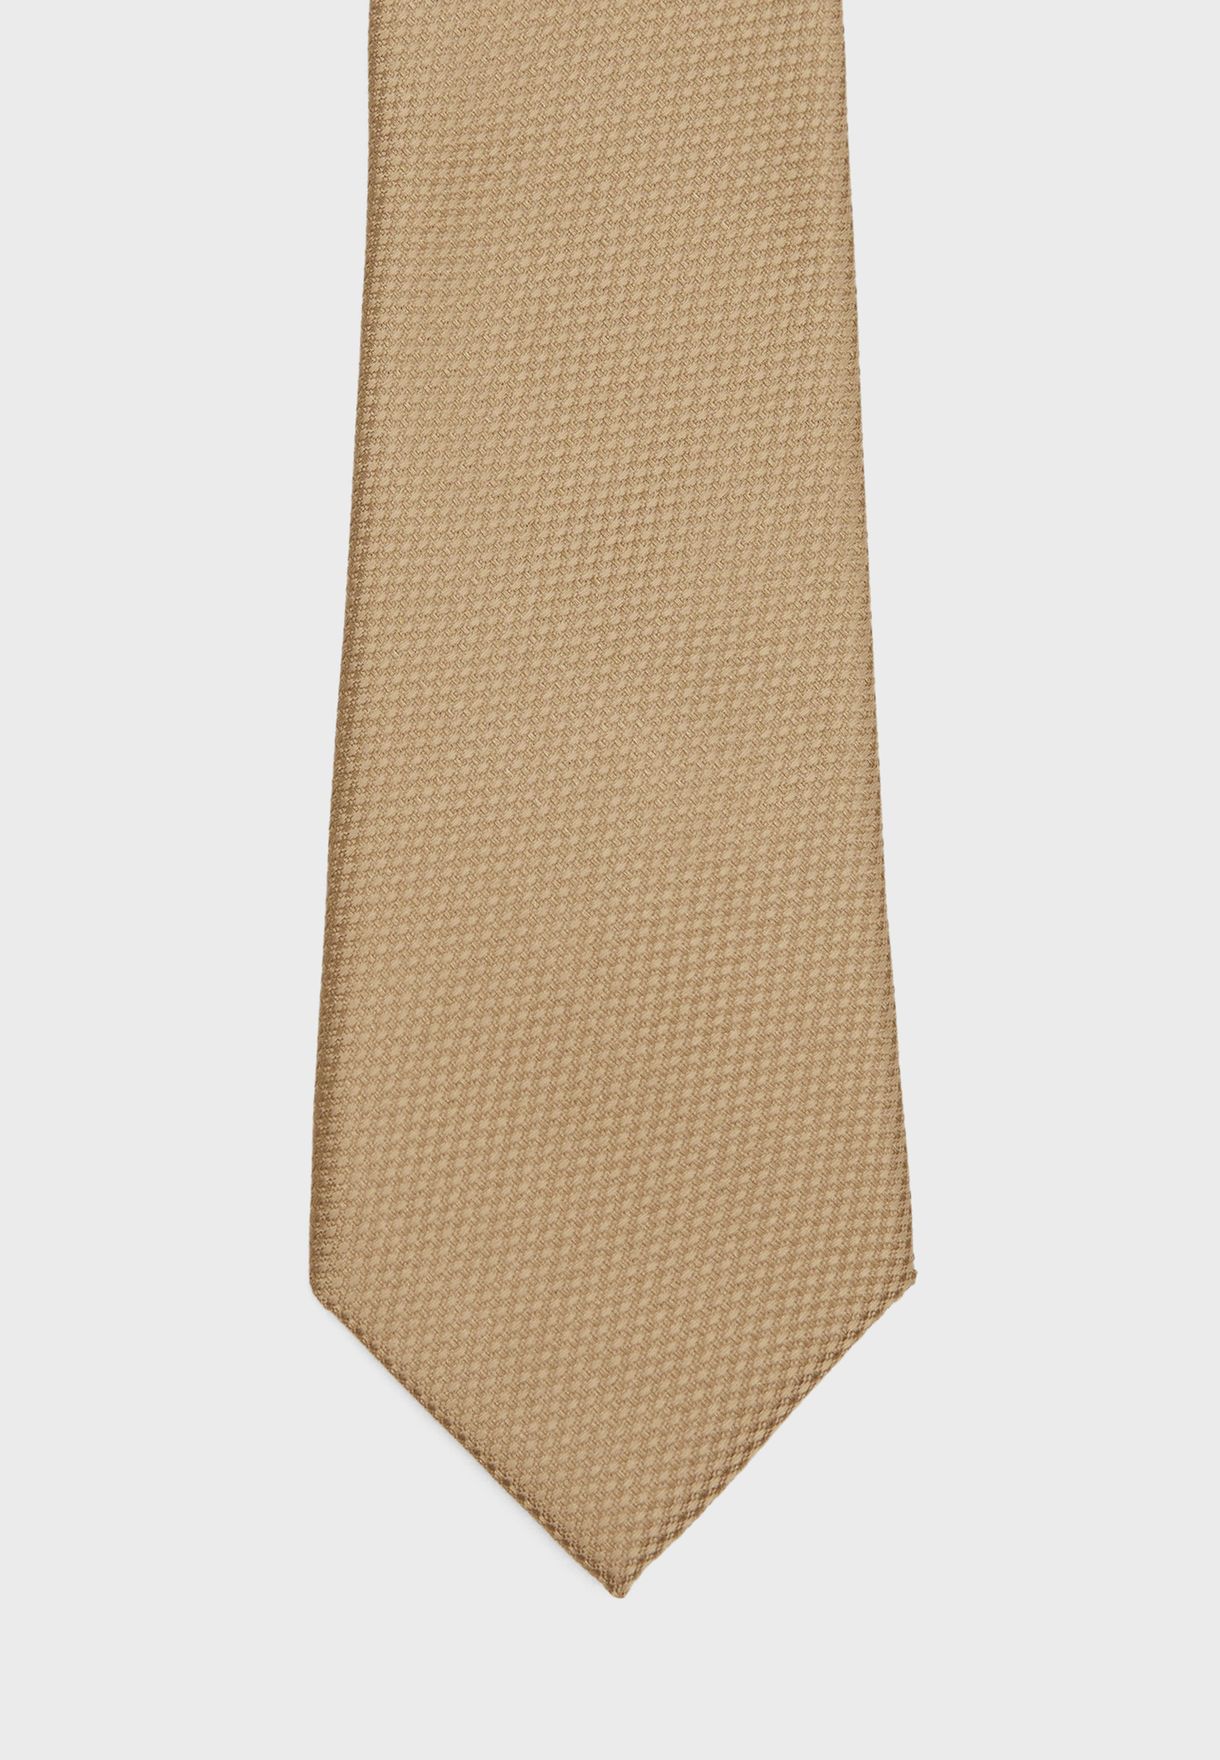 ربطة عنق انيقة